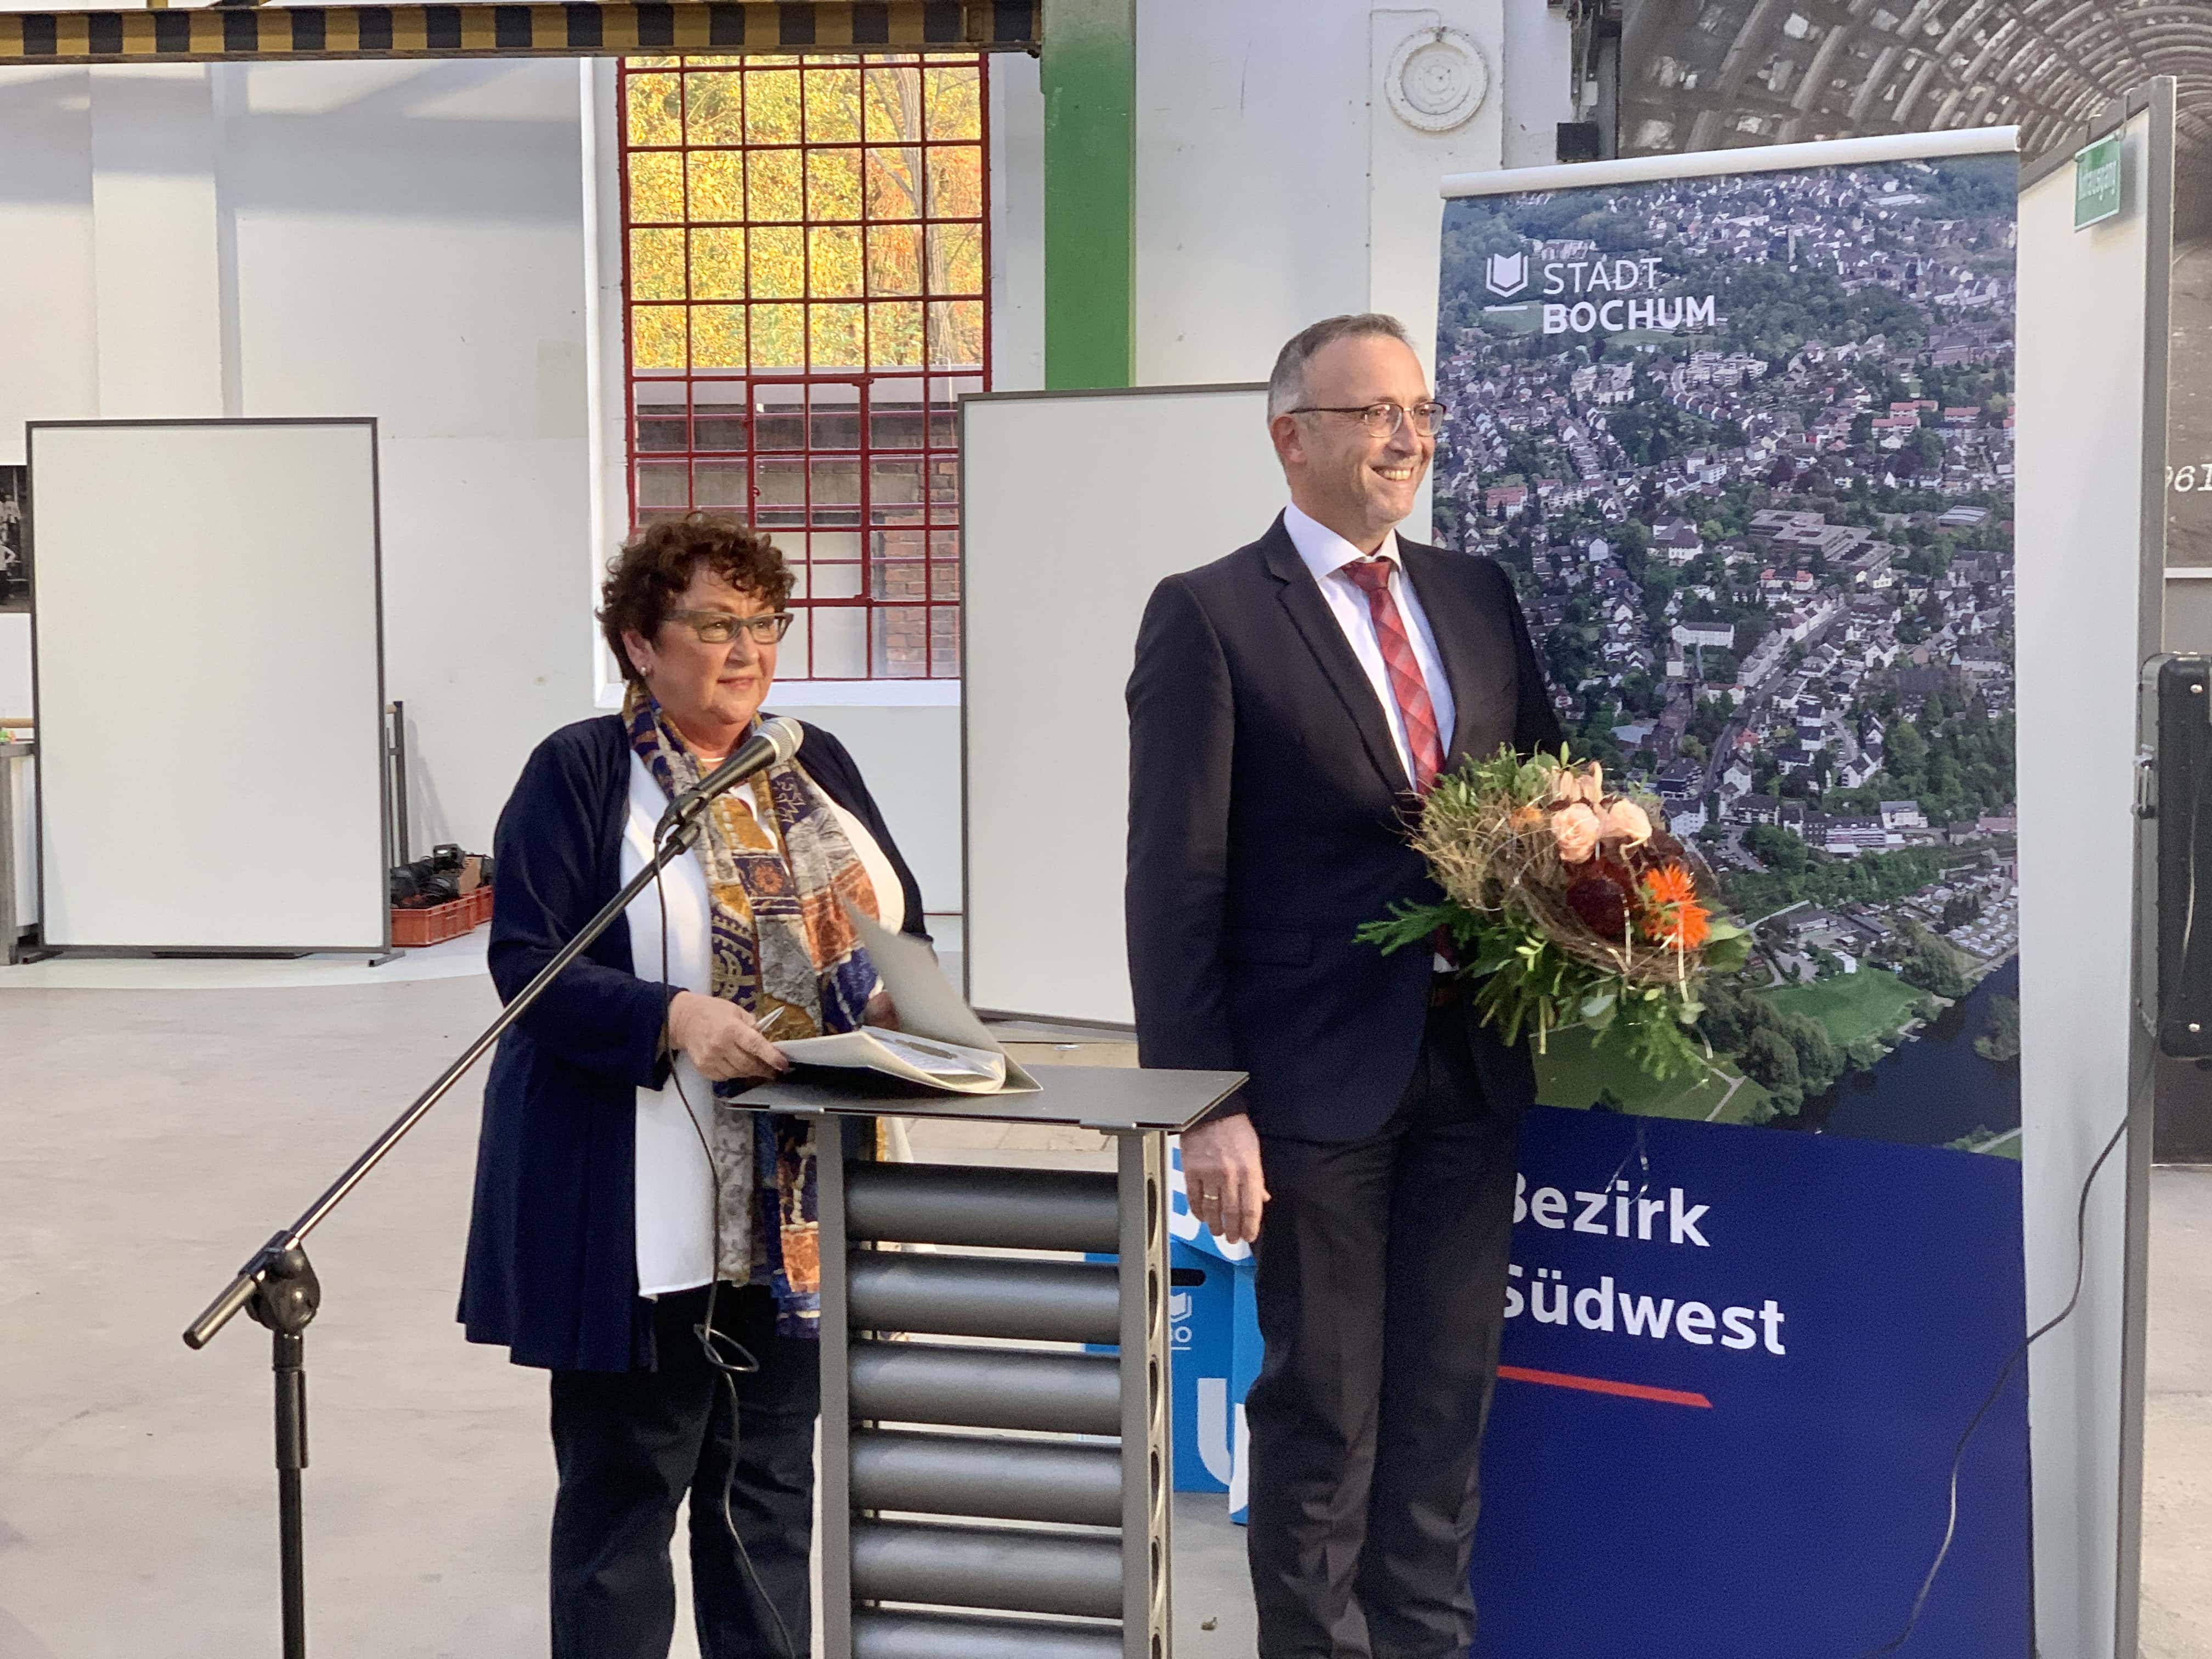 Bezirksvertretung Bochum-Südwest: Konstituierung (04.11.2020): Altersvorsitzende Brigitte Kirchhoff (SPD) und der (erneut) gewählte Bezirksbürgermeister Marc Gräf (SPD) mit Blumen #bvBOsuedwest